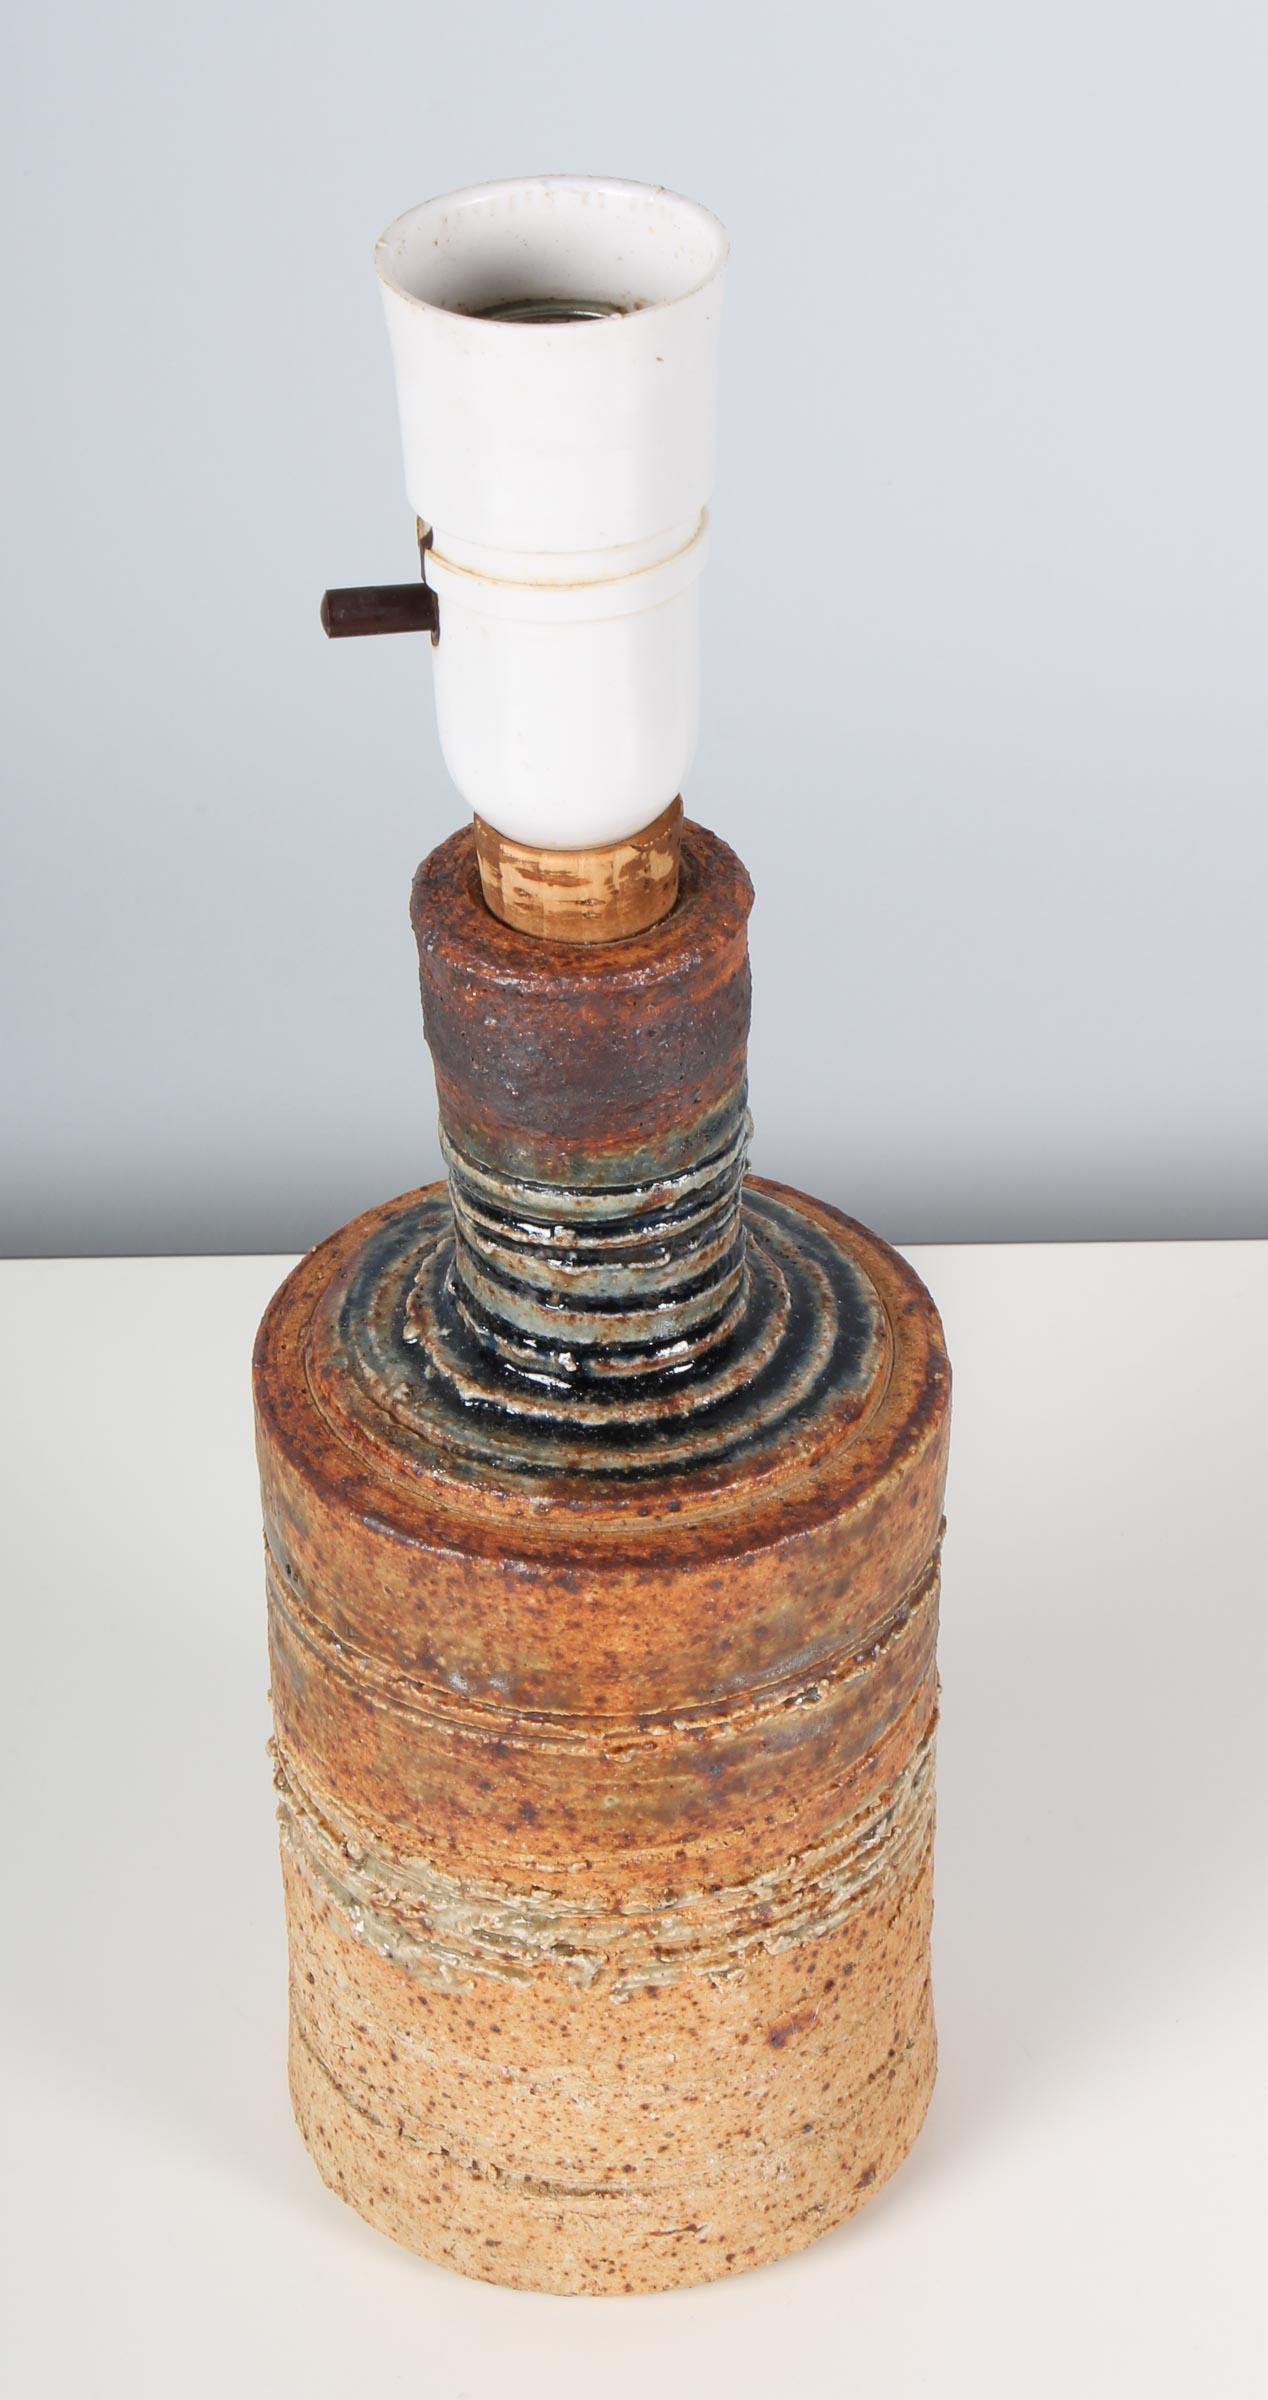 tischlampe aus Steingut, radgedreht, 1960er Jahre, vom dänischen Keramiker Tue Poulsen. Klar glasierter, gesprenkelter, neutraler Steingut-Tonkörper mit eingeschnittenem, horizontalem Muster über Eisenoxid-Farbstoff. Unterseite gestempelt 